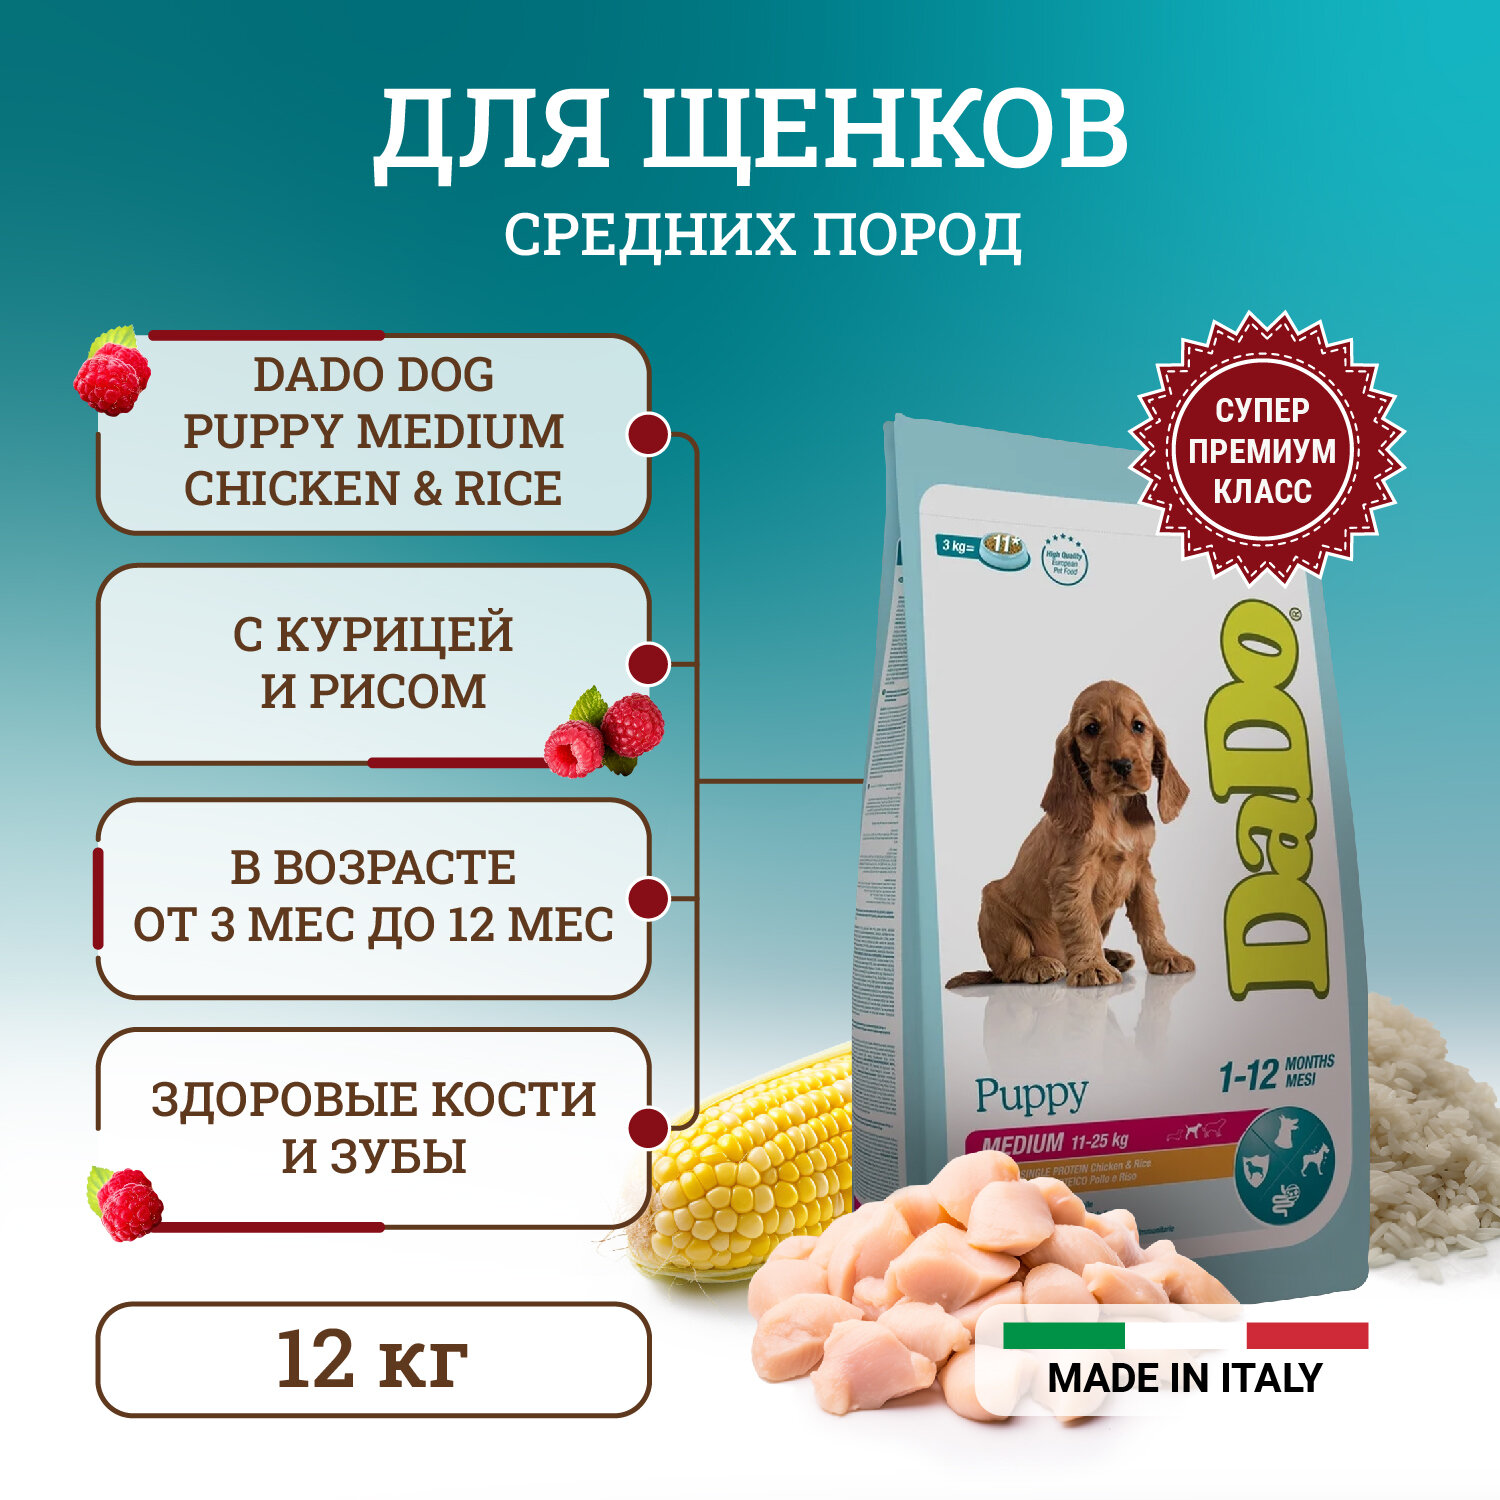 Dado Dog Puppy Medium Chicken & Rice монобелковый корм для щенков средних пород, с курицей и рисом 12 кг